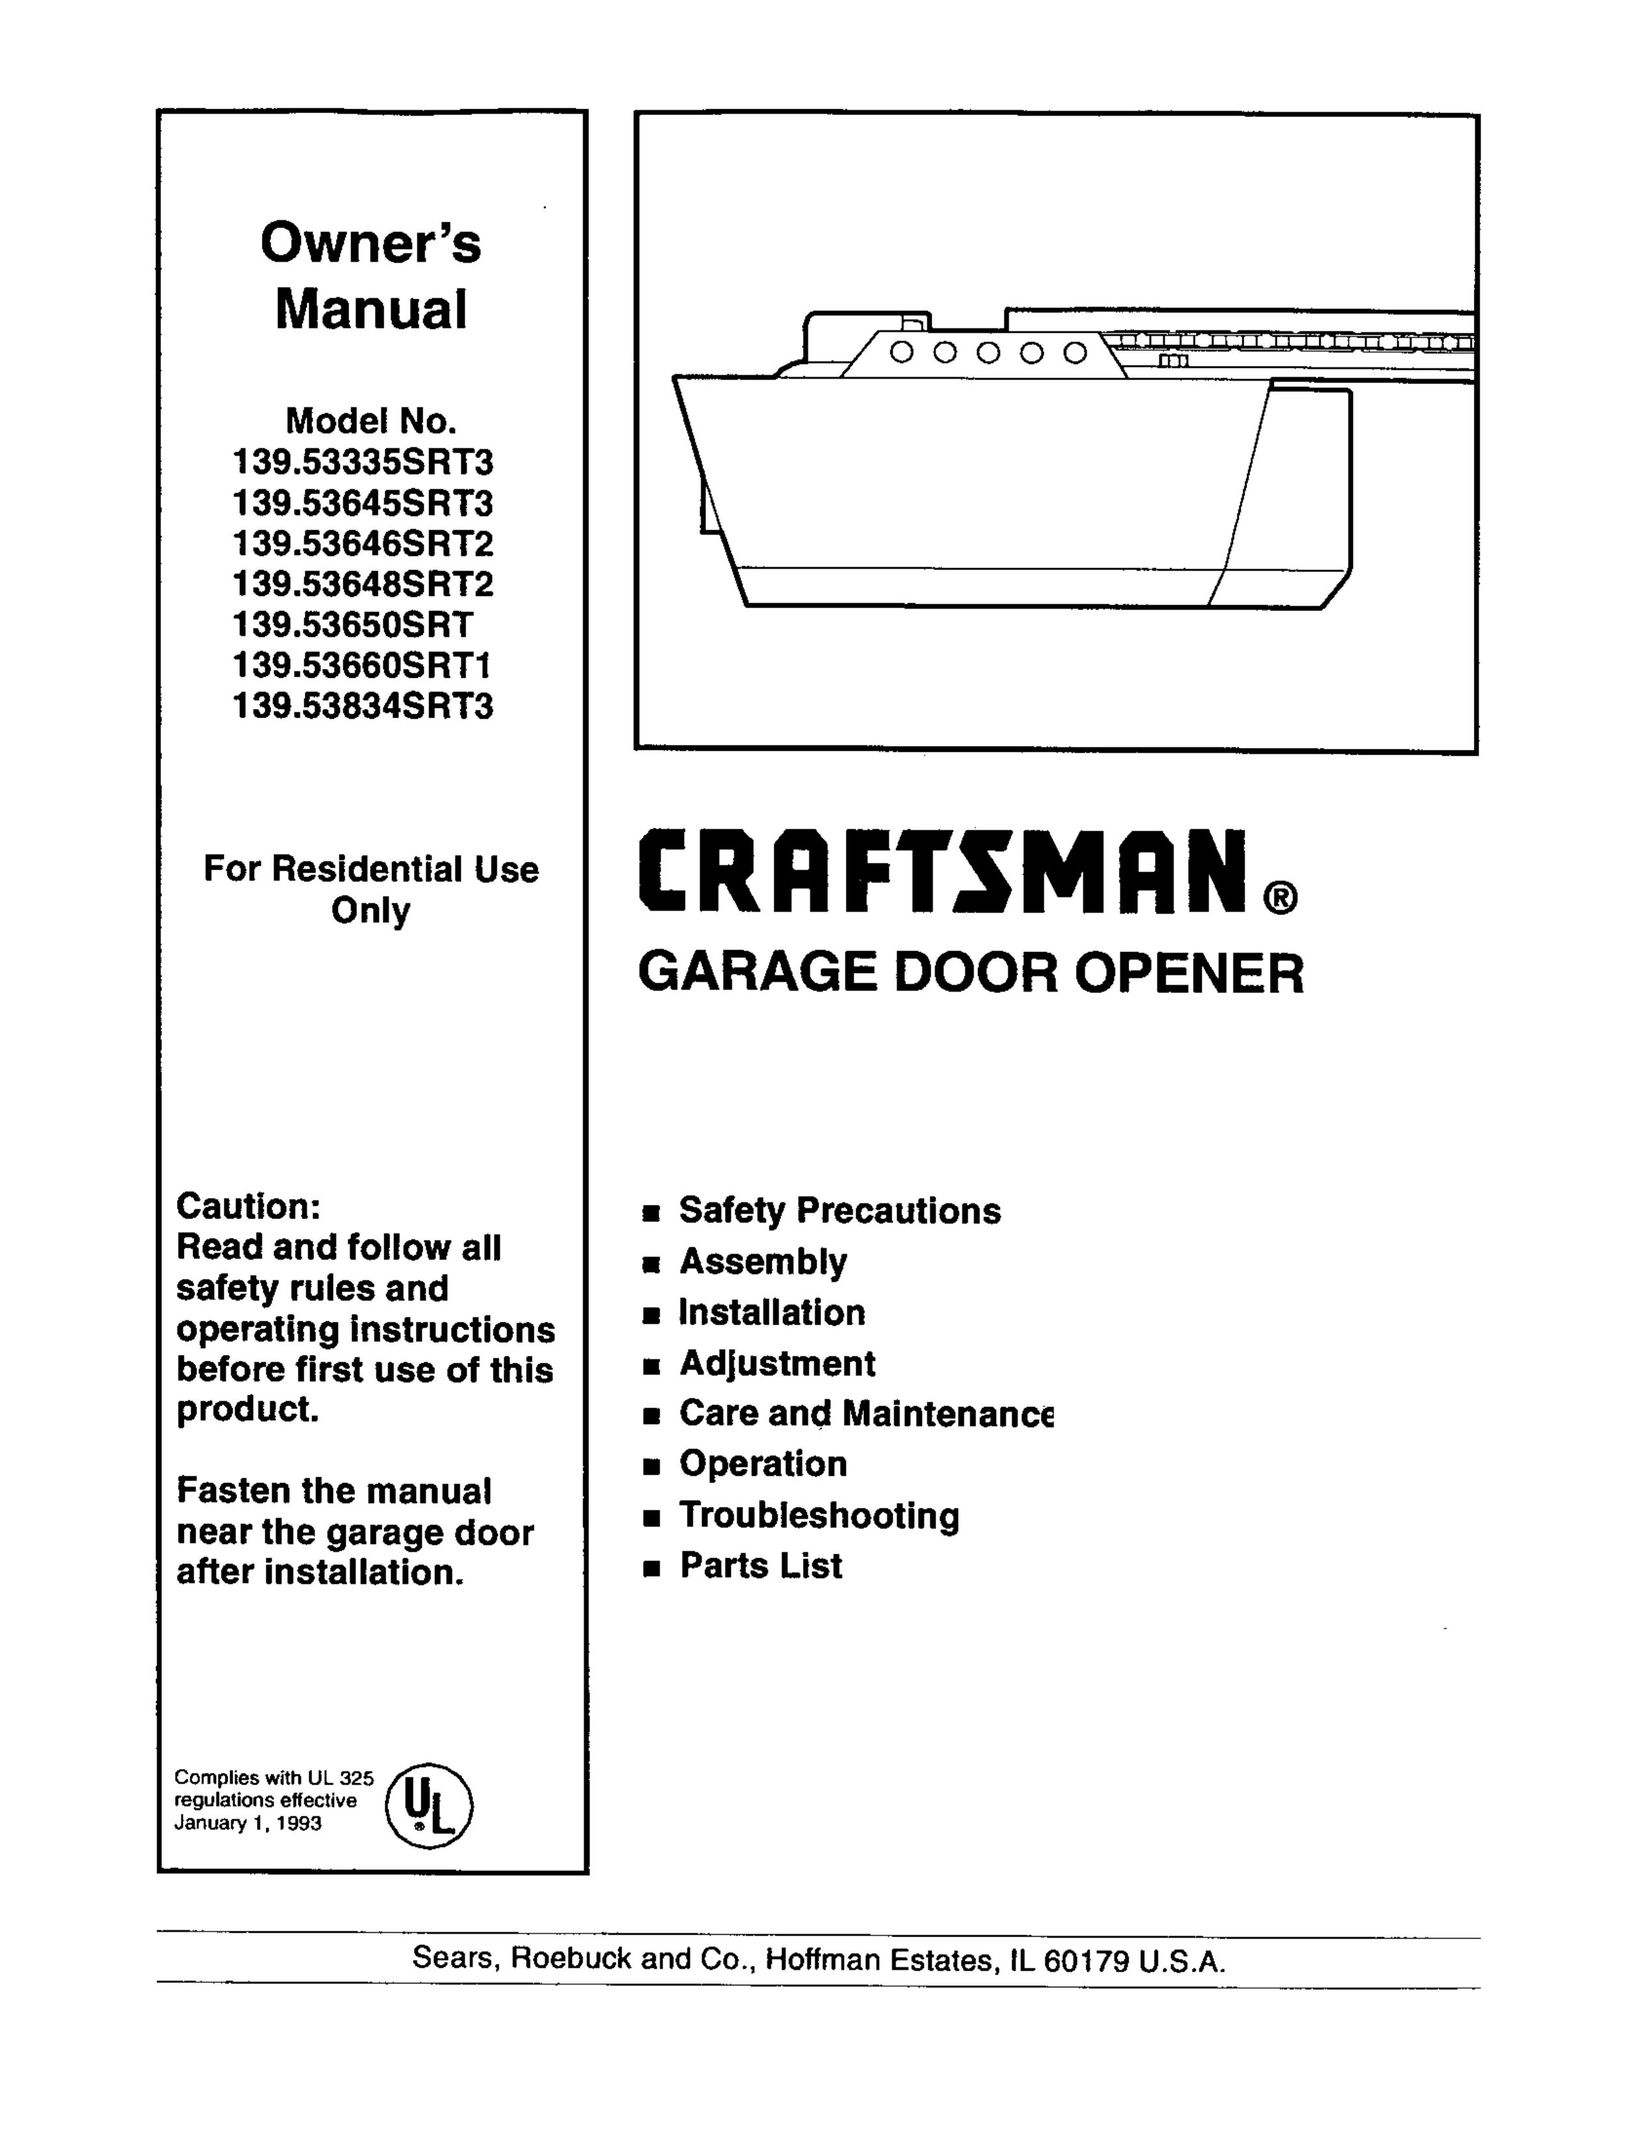 Craftsman 139.53645SRT3 Garage Door Opener User Manual